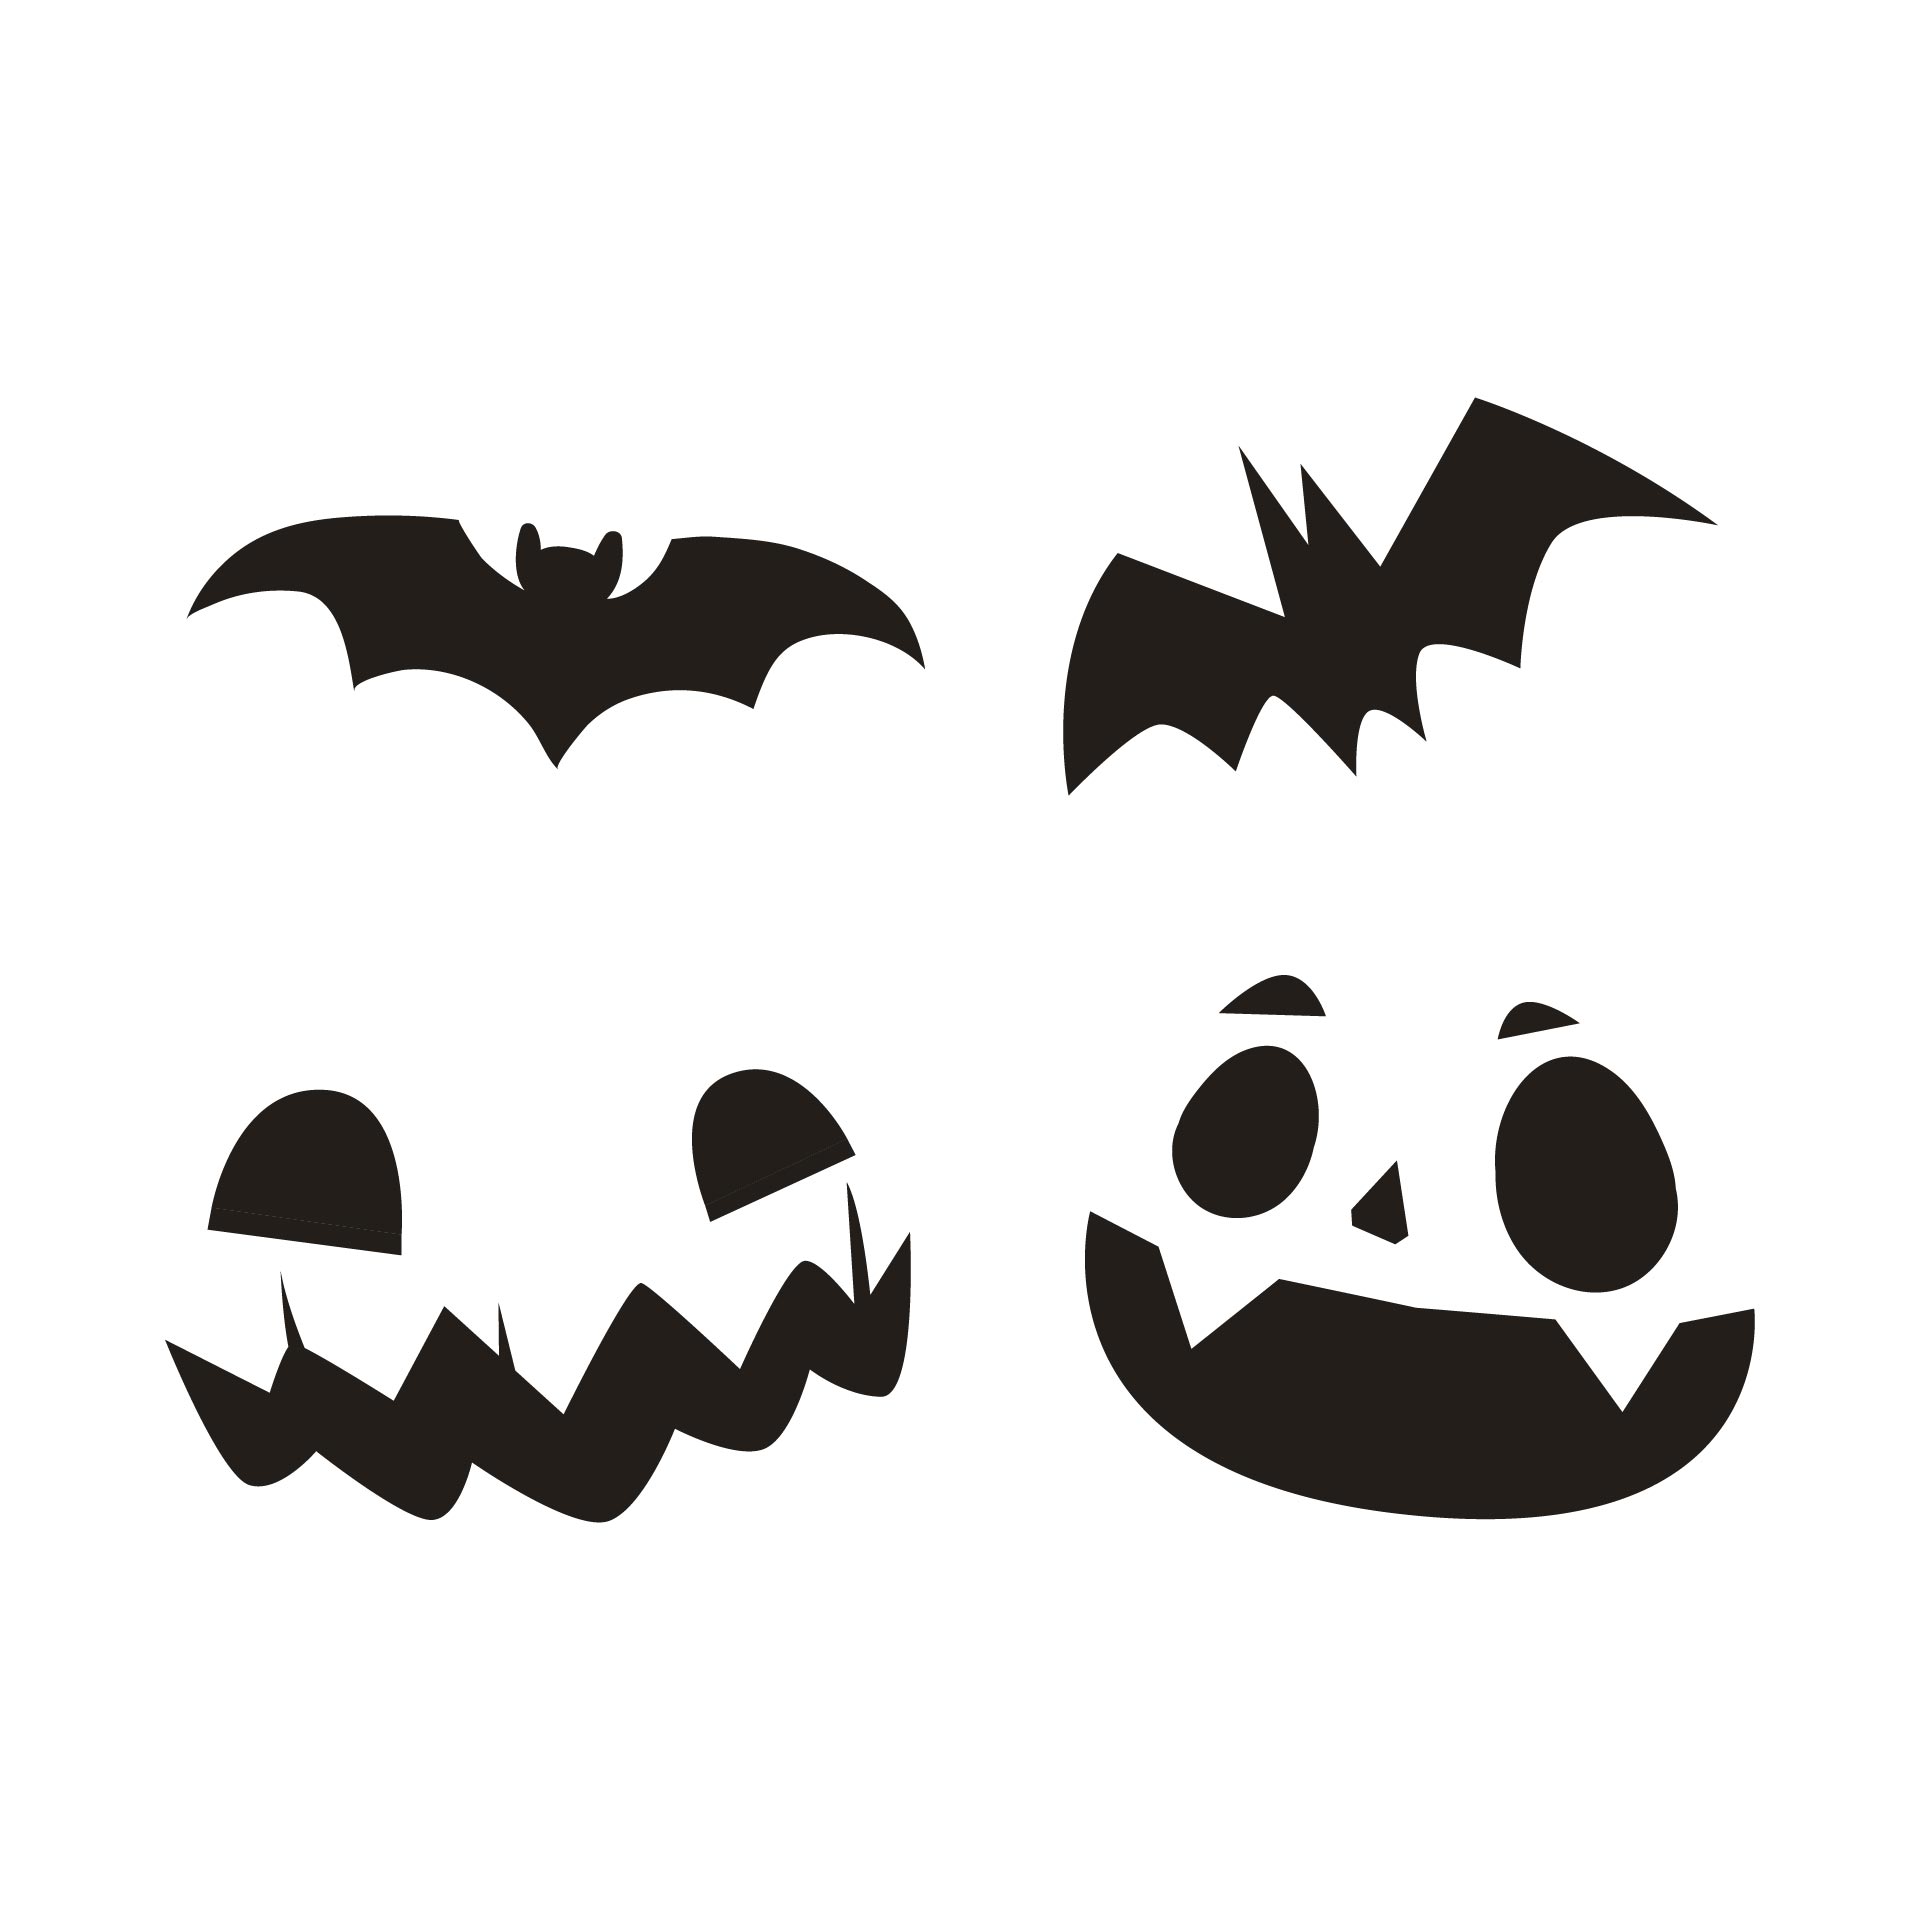 15 Best Free Printable Halloween Designs PDF for Free at Printablee